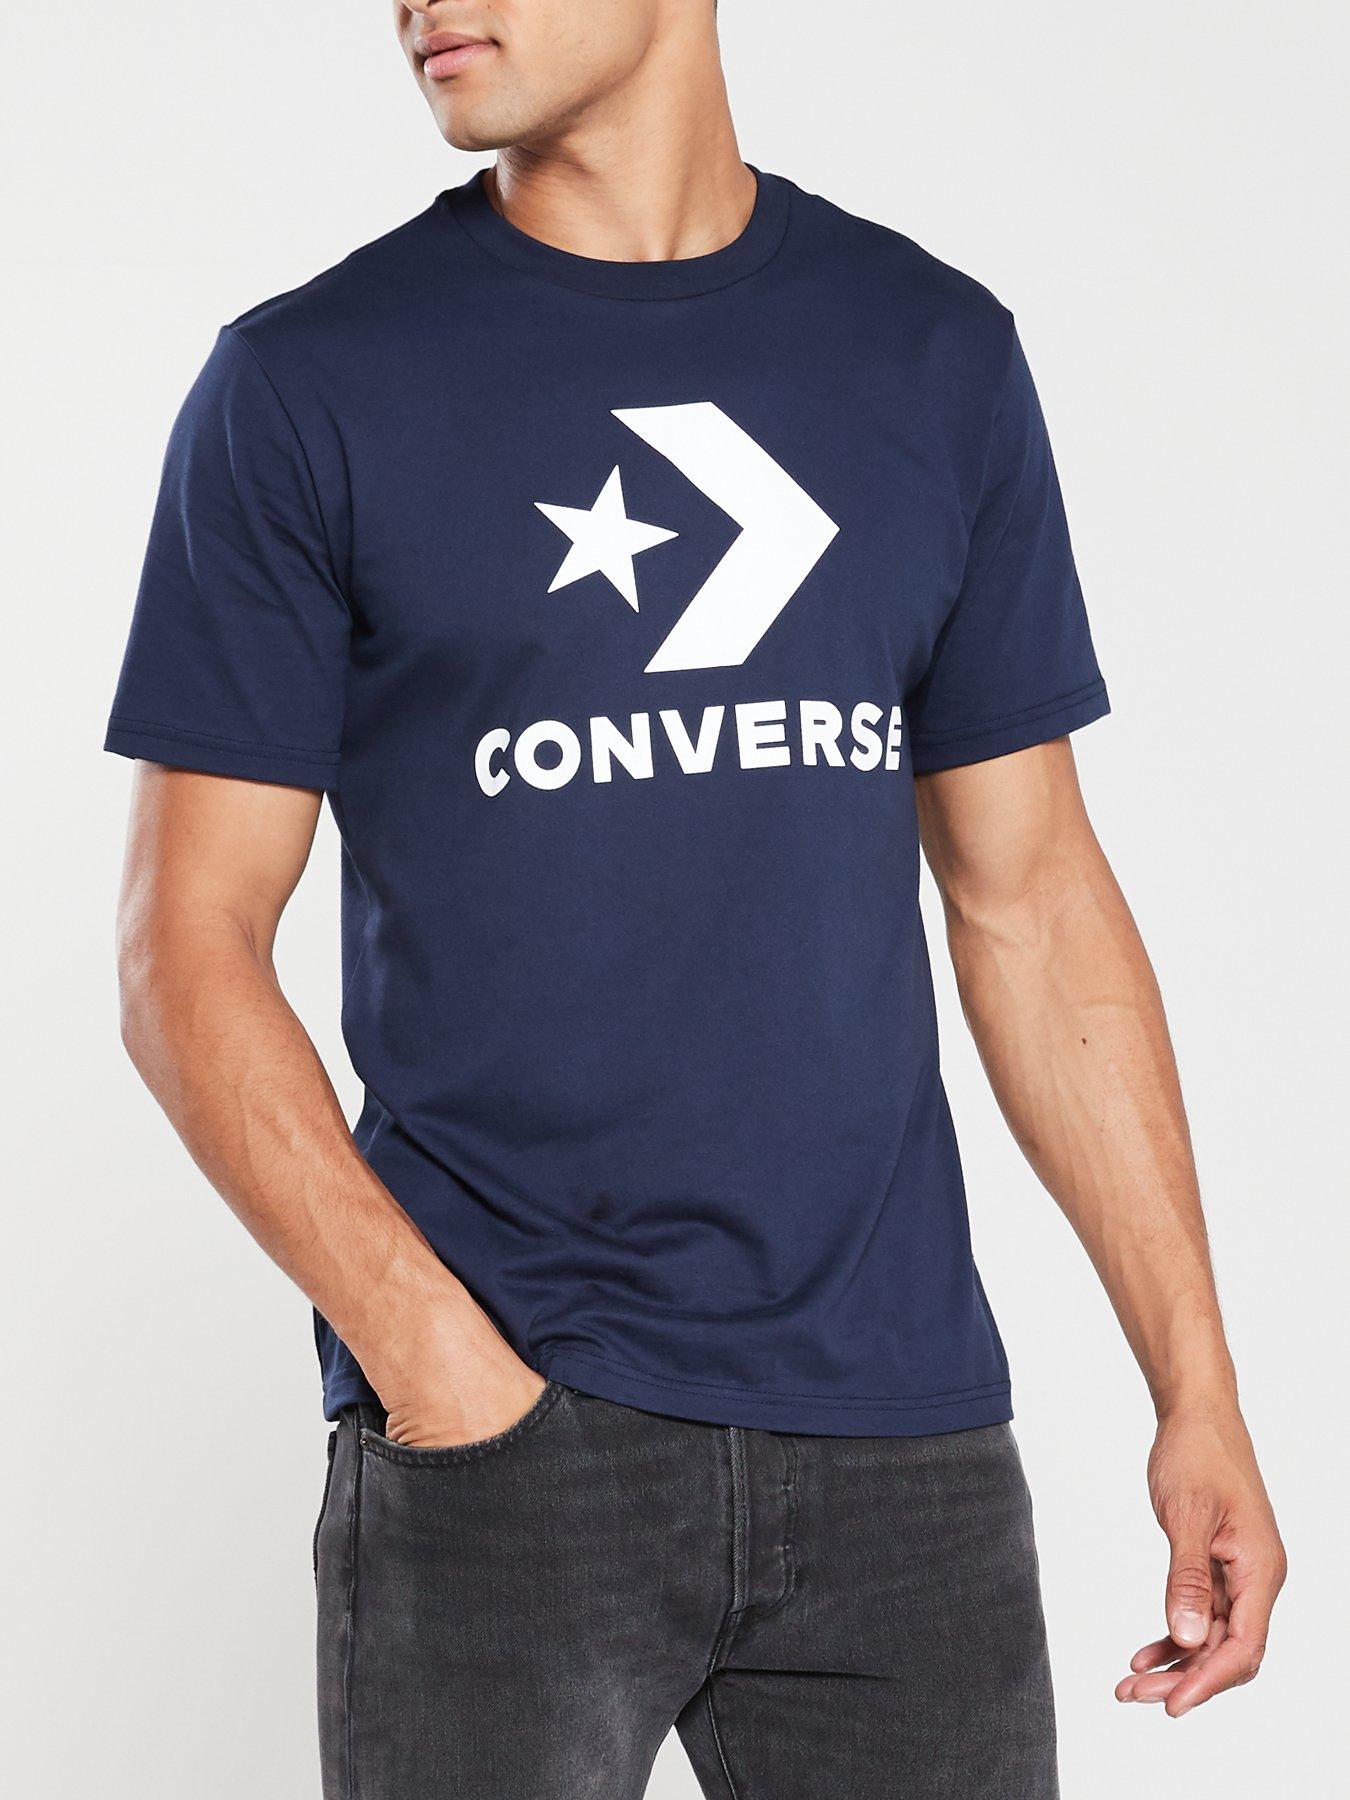 mens converse t shirts uk